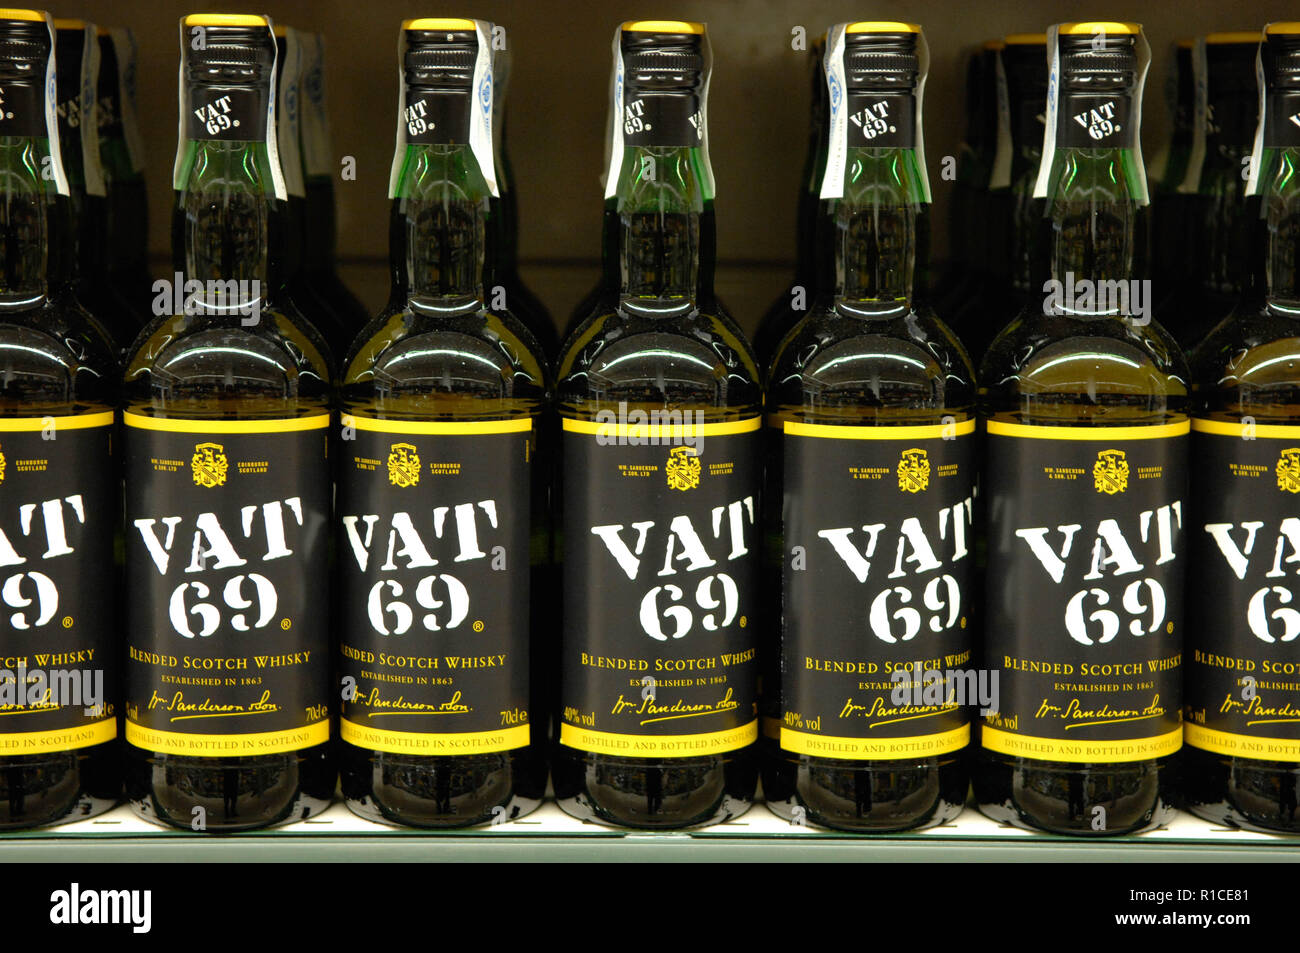 Vat 69,blended Scotch Whisky Stock Photo